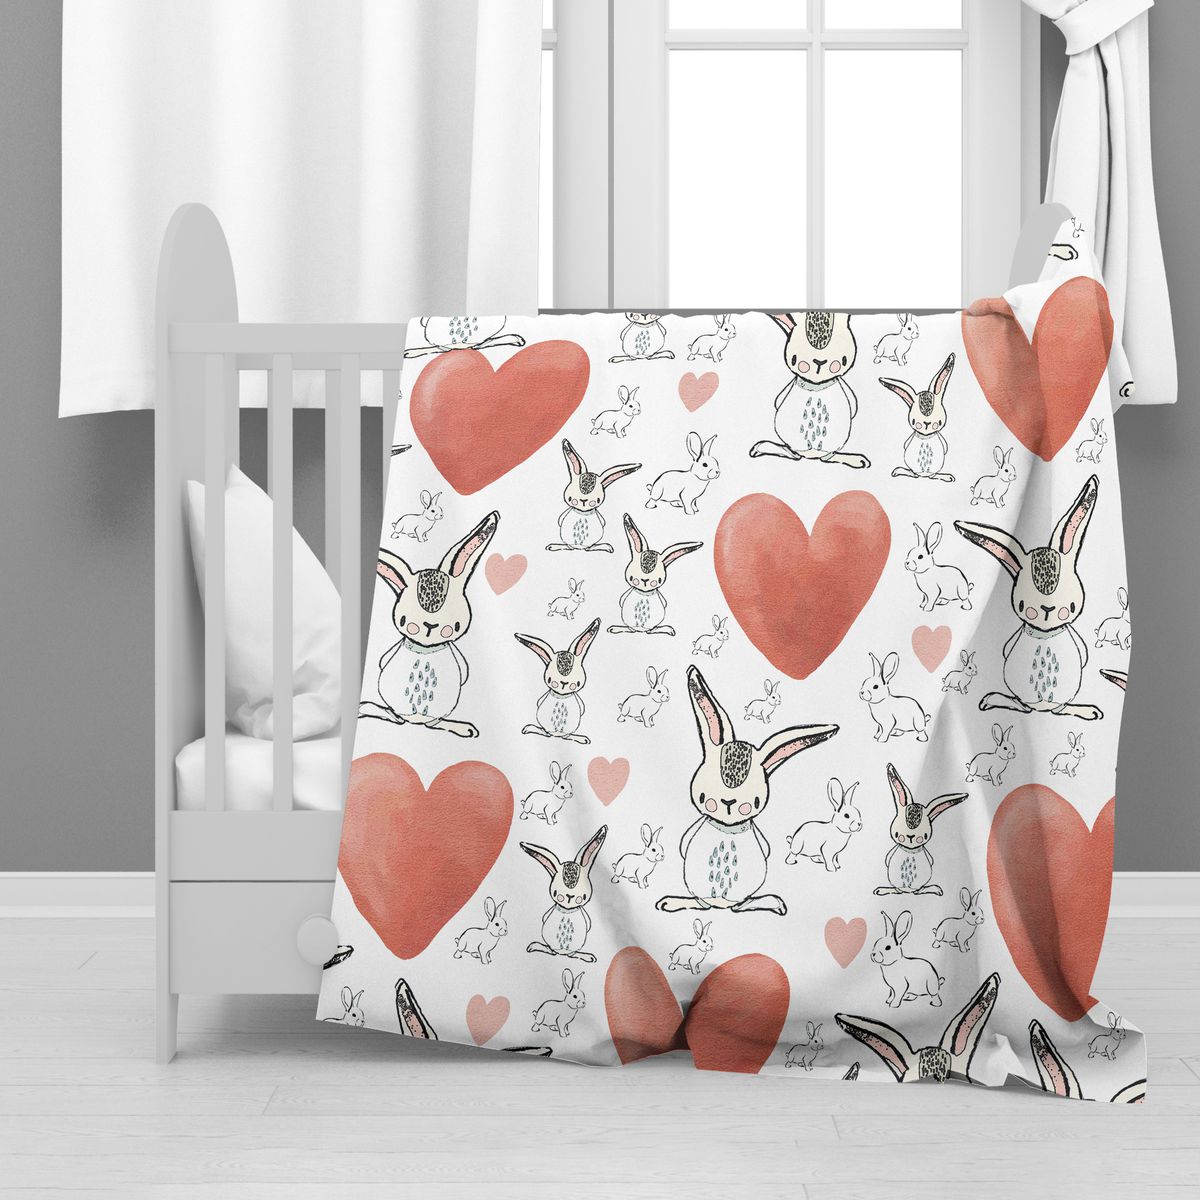 Big Heart Rabbits Minky Blanket By Mark van Vuuuren